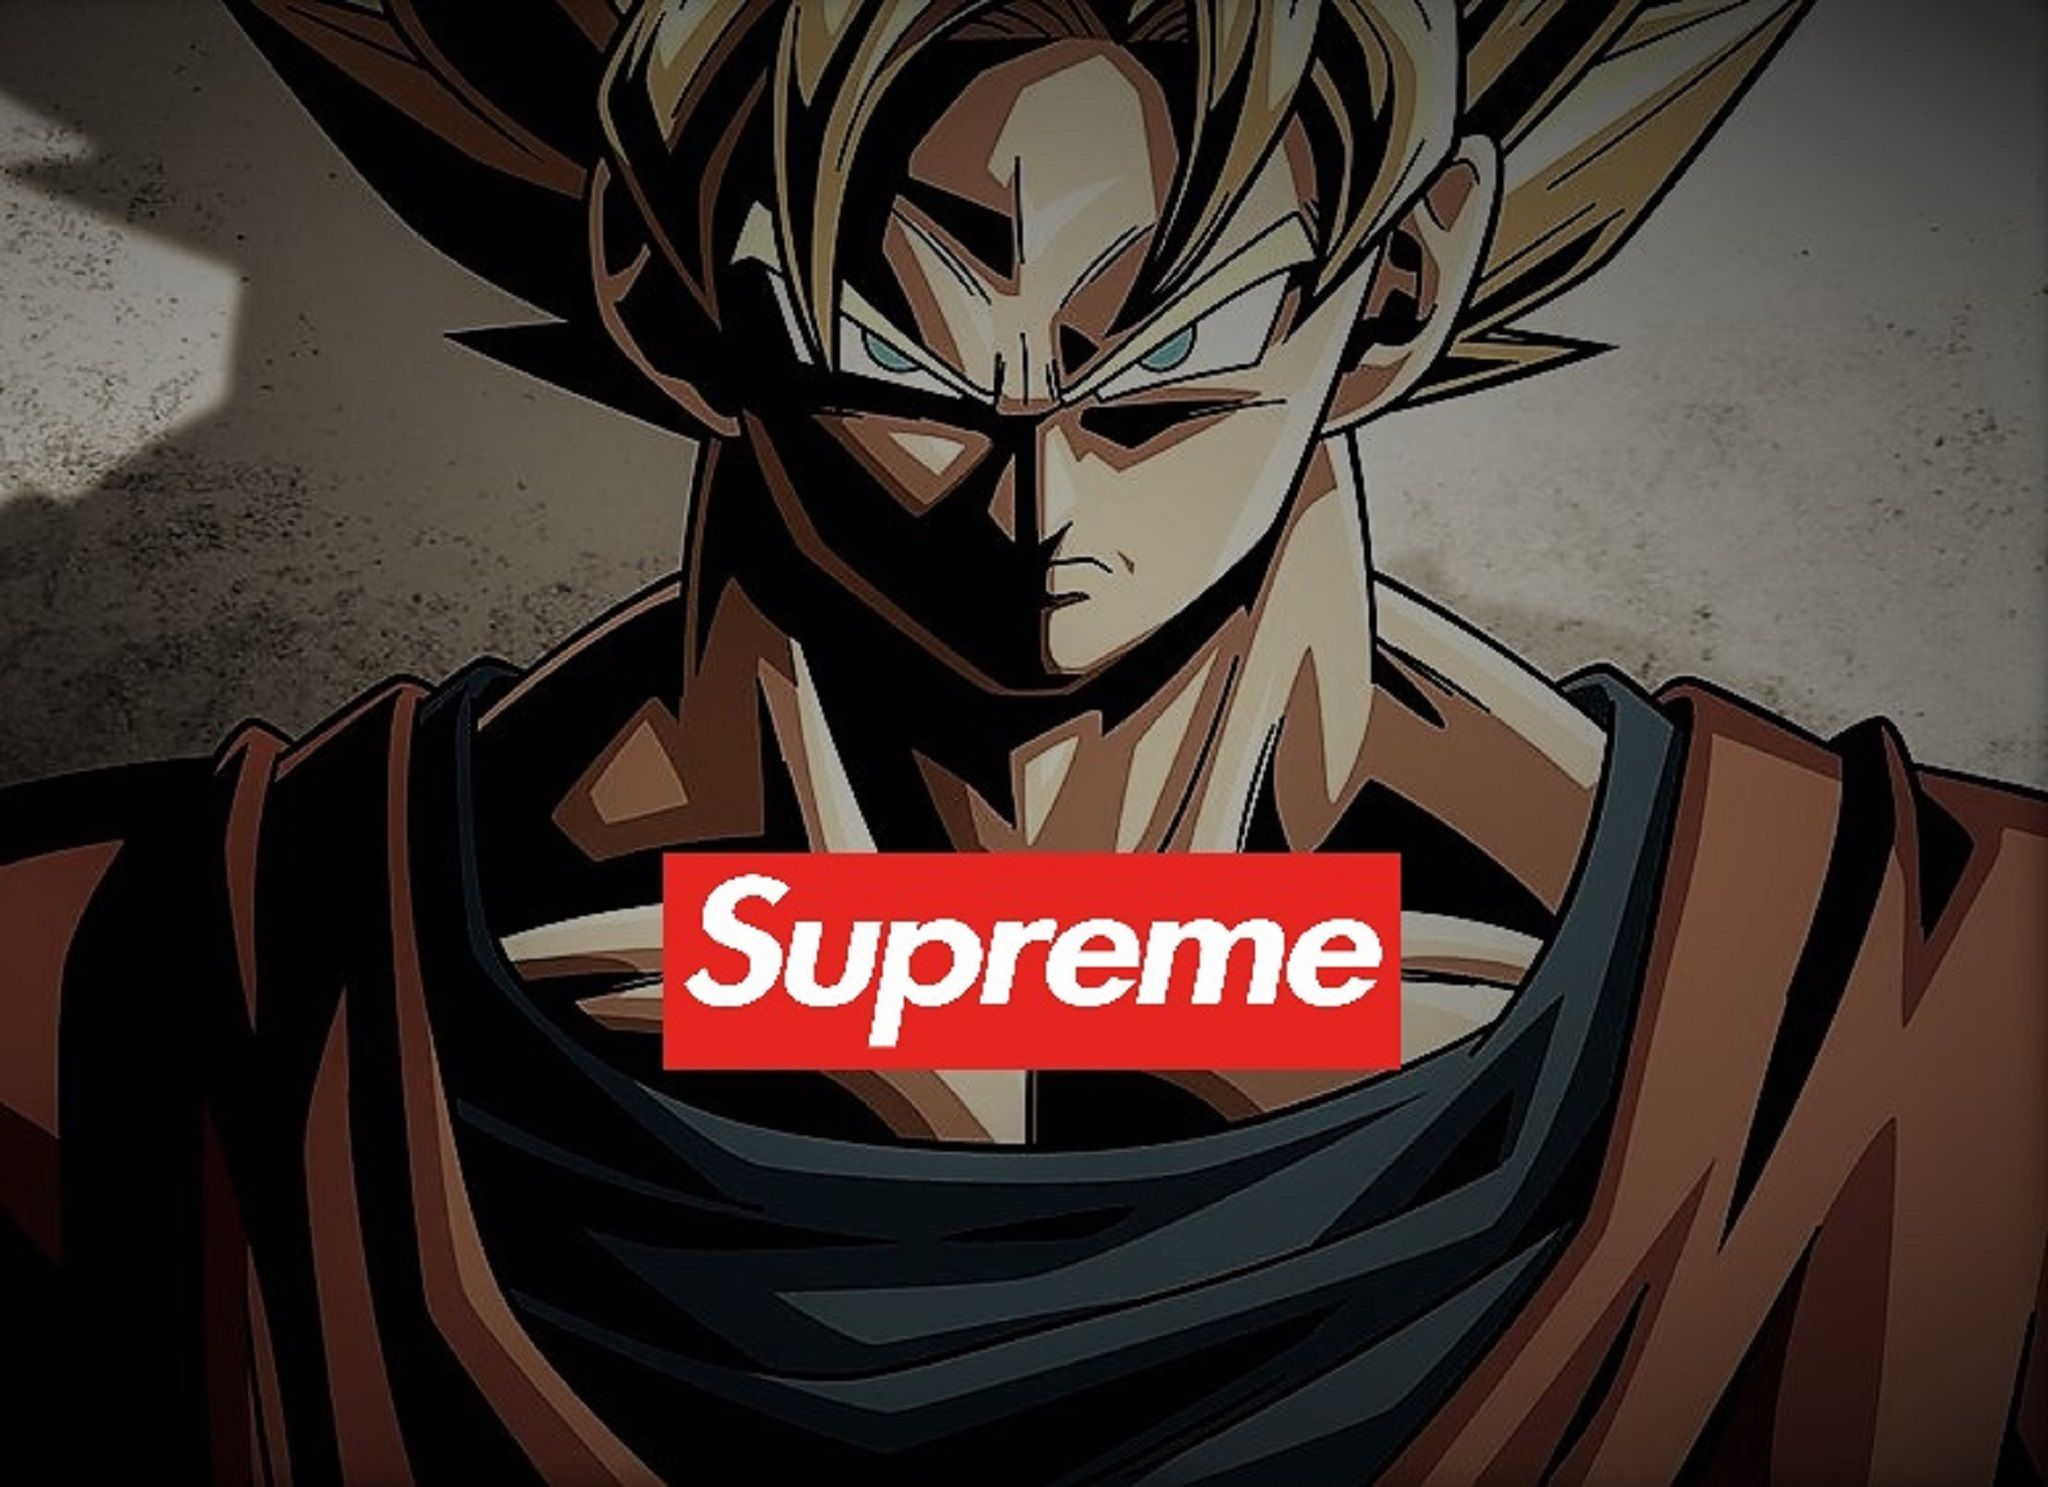 Son Goku Supreme Ssj Wallaper. Supreme wallpaper, Son goku, Goku